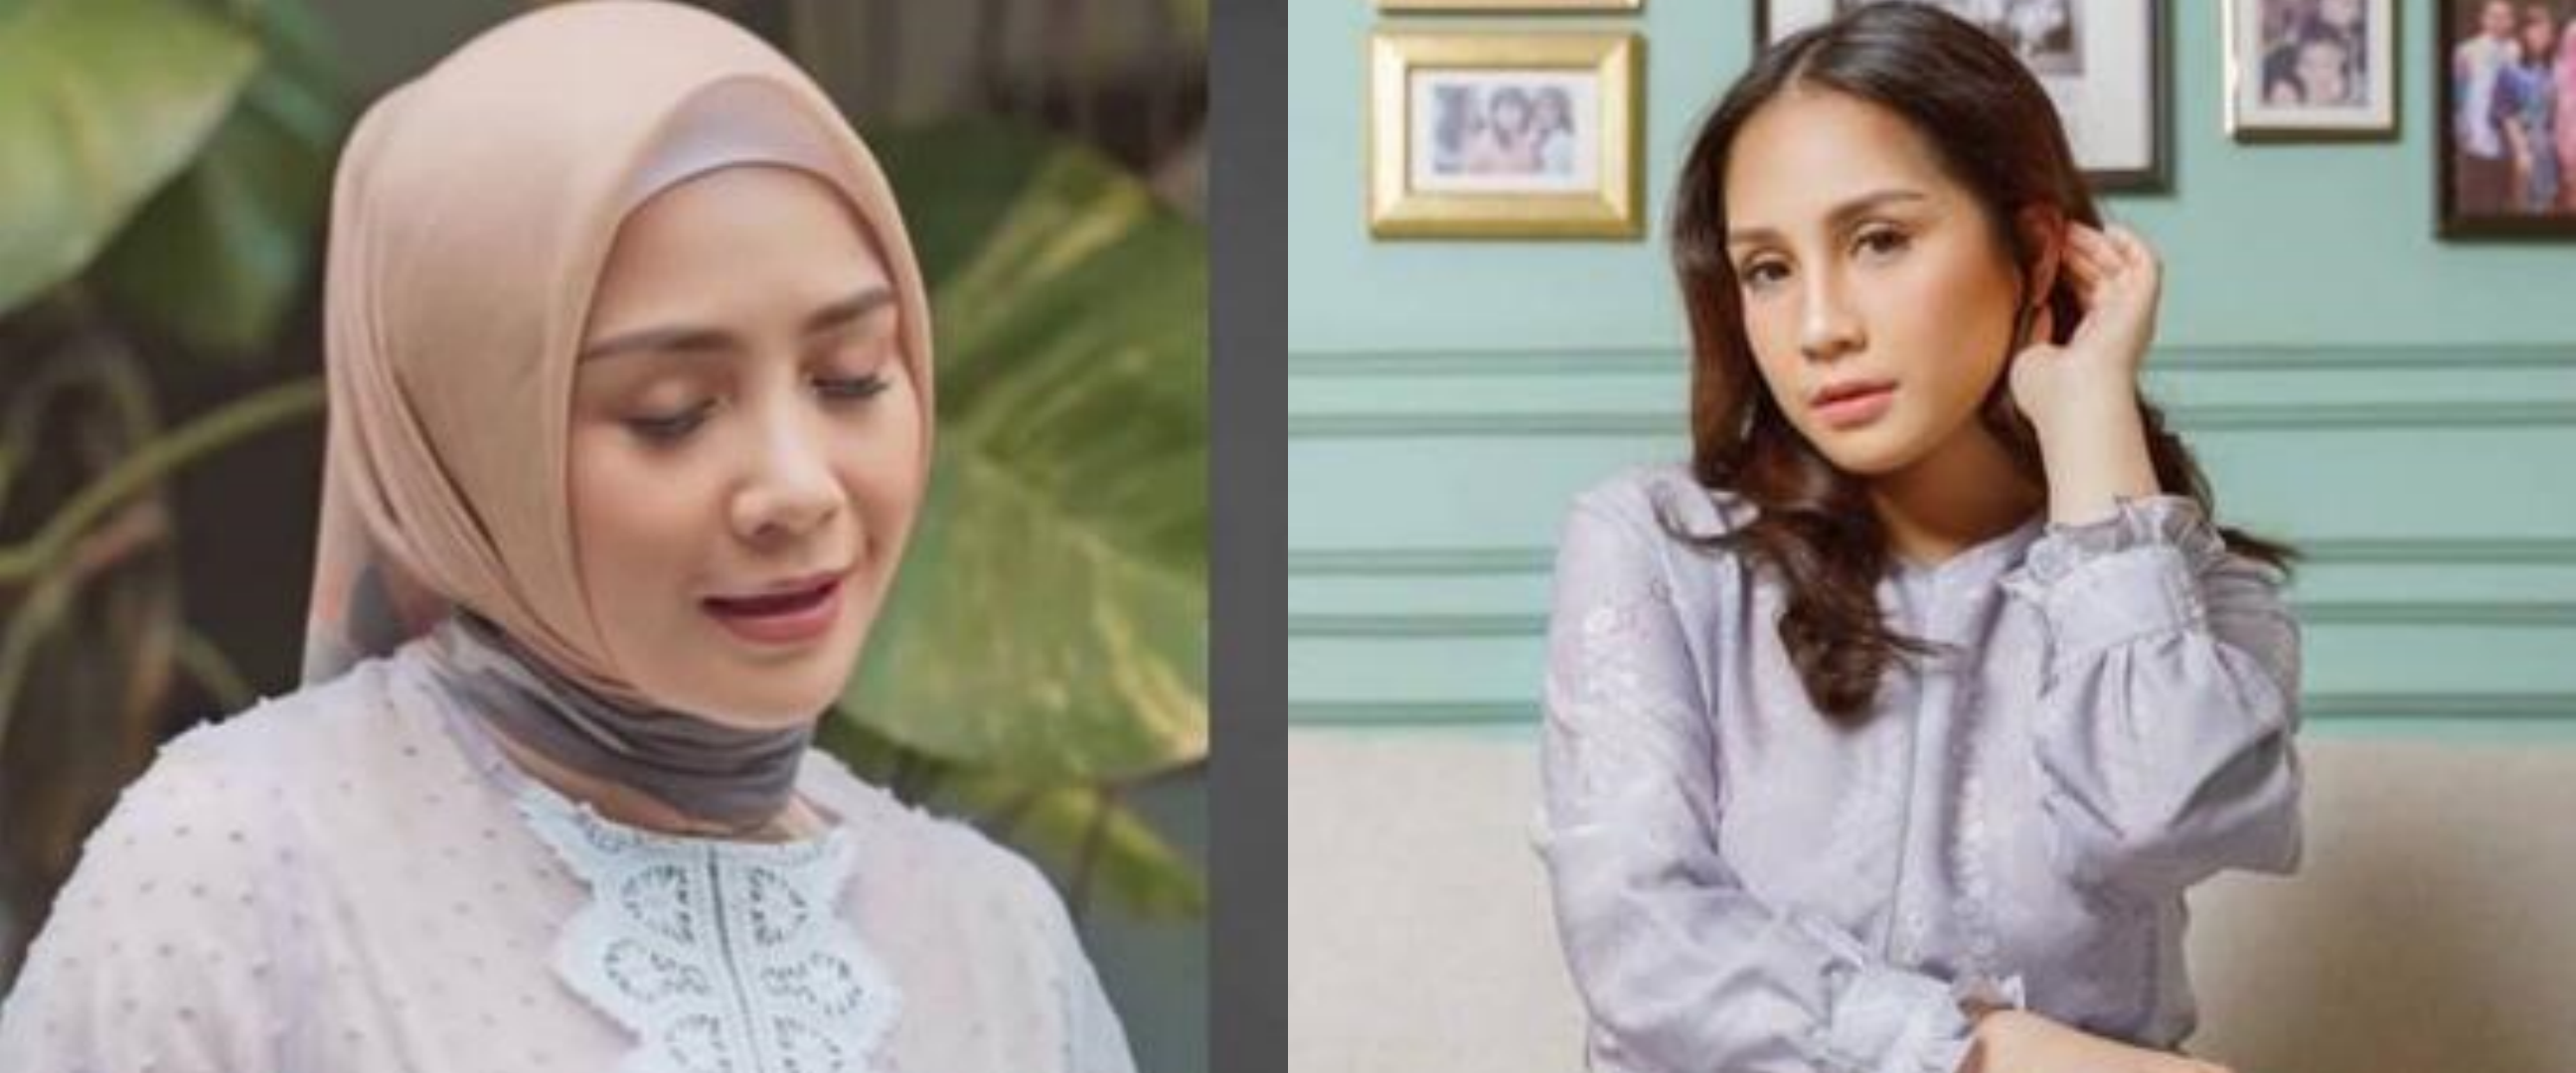 Taksiran 10 fashion item muslim Nagita Slavina, gamisnya Rp 100 juta